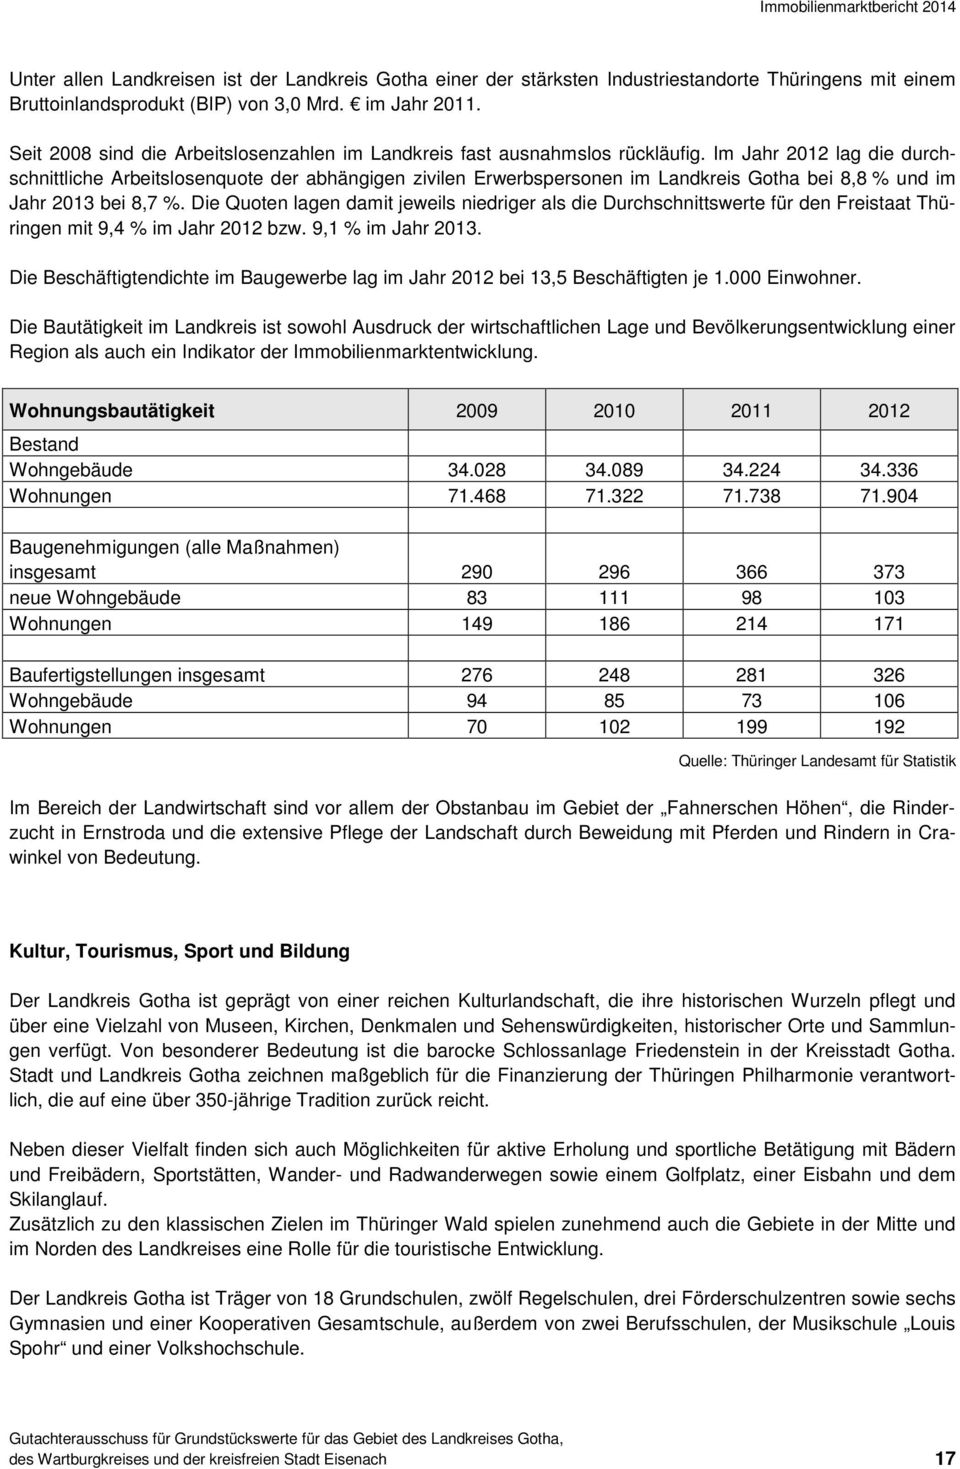 Im Jahr 2012 lag die durchschnittliche Arbeitslosenquote der abhängigen zivilen Erwerbspersonen im Landkreis Gotha bei 8,8 % und im Jahr 2013 bei 8,7 %.